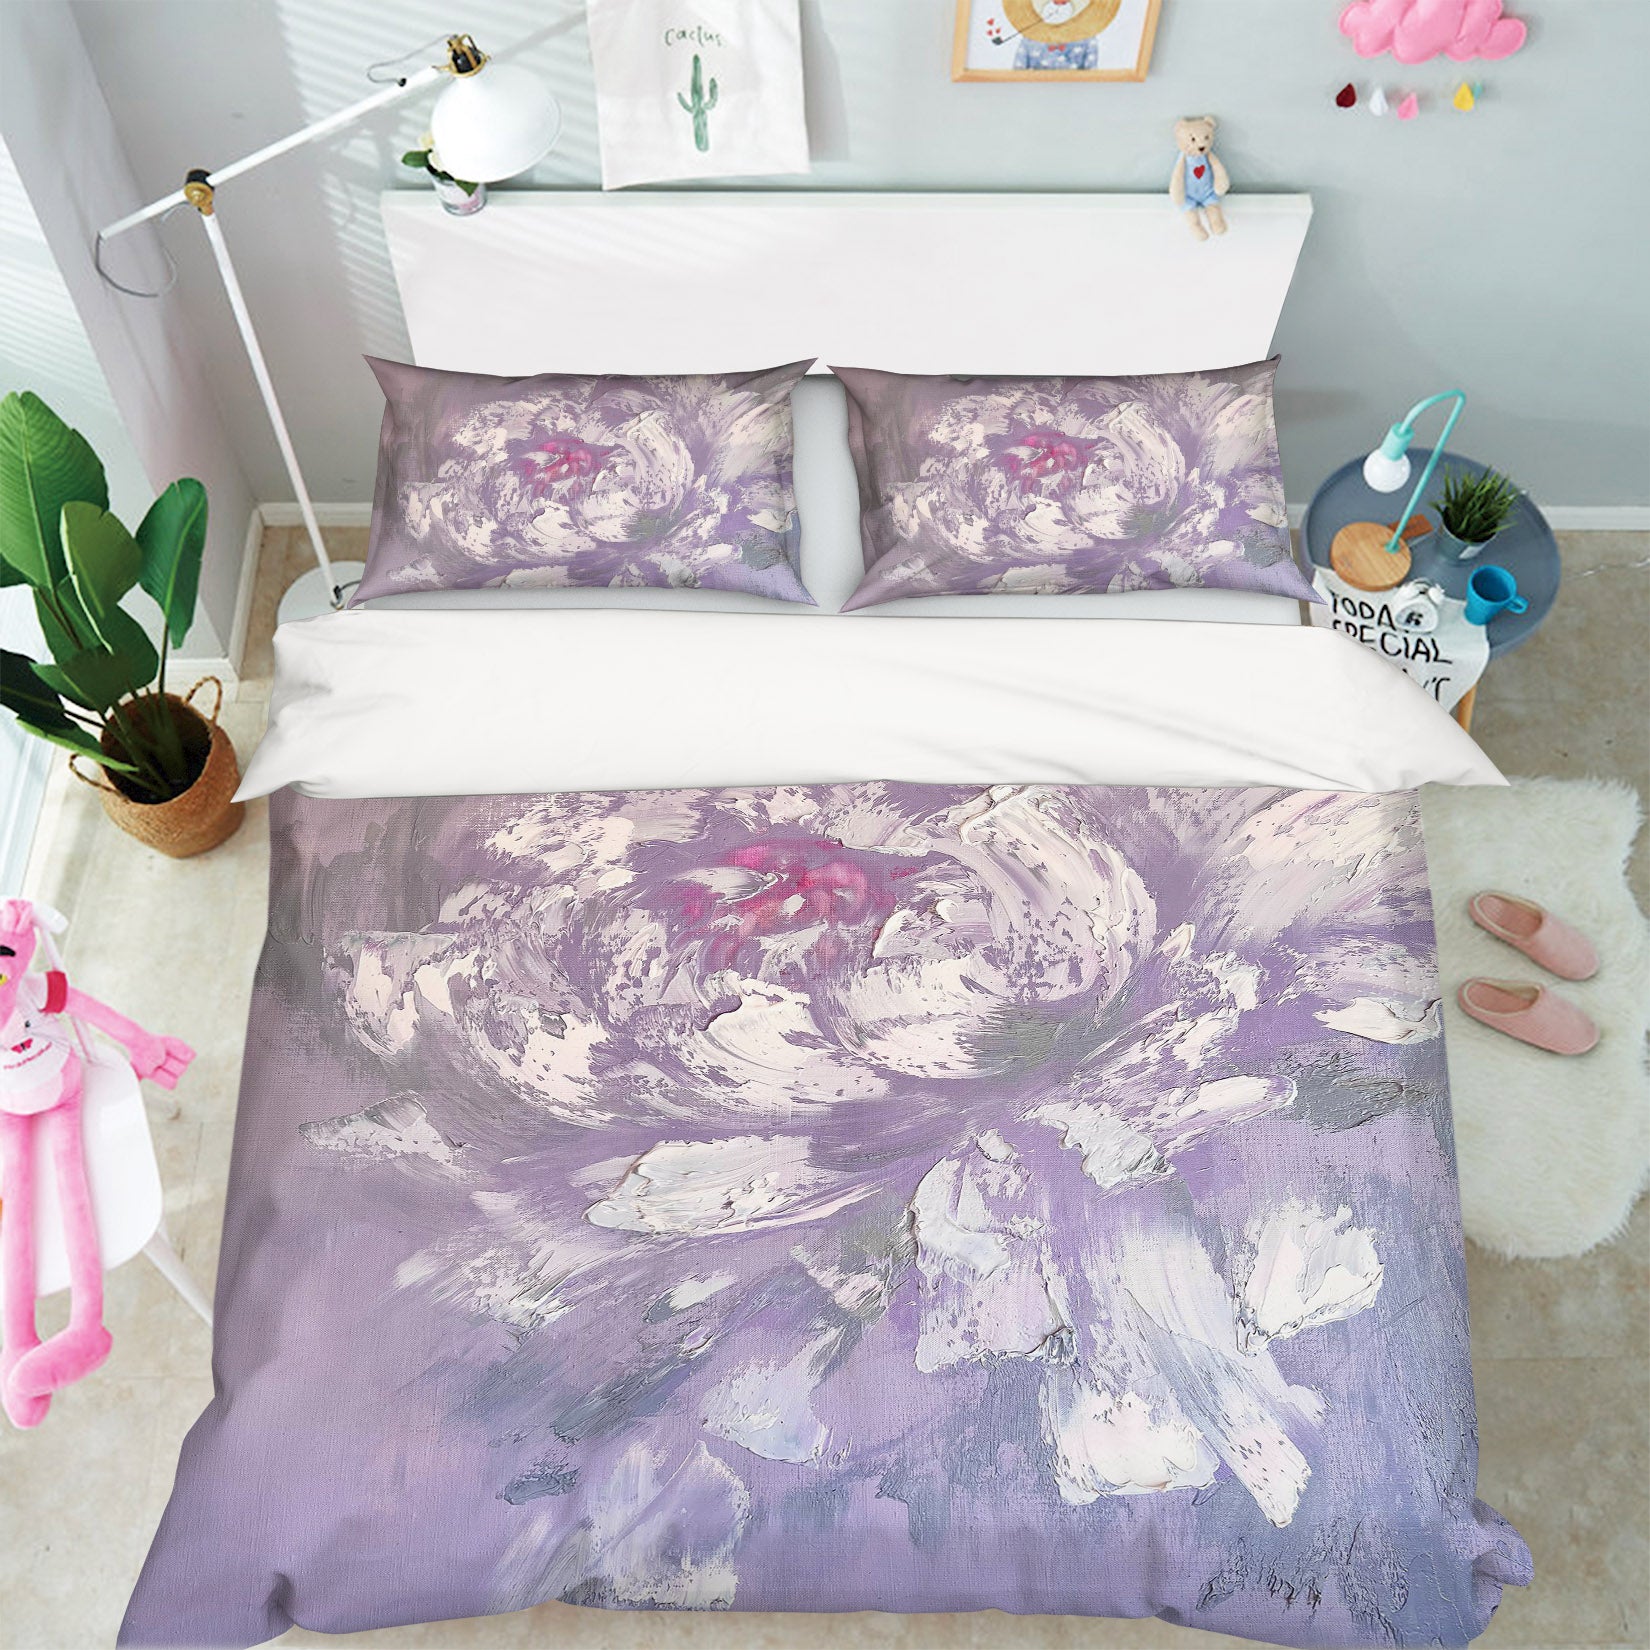 3D White Pattern 3806 Skromova Marina Bedding Bed Pillowcases Quilt Cover Duvet Cover